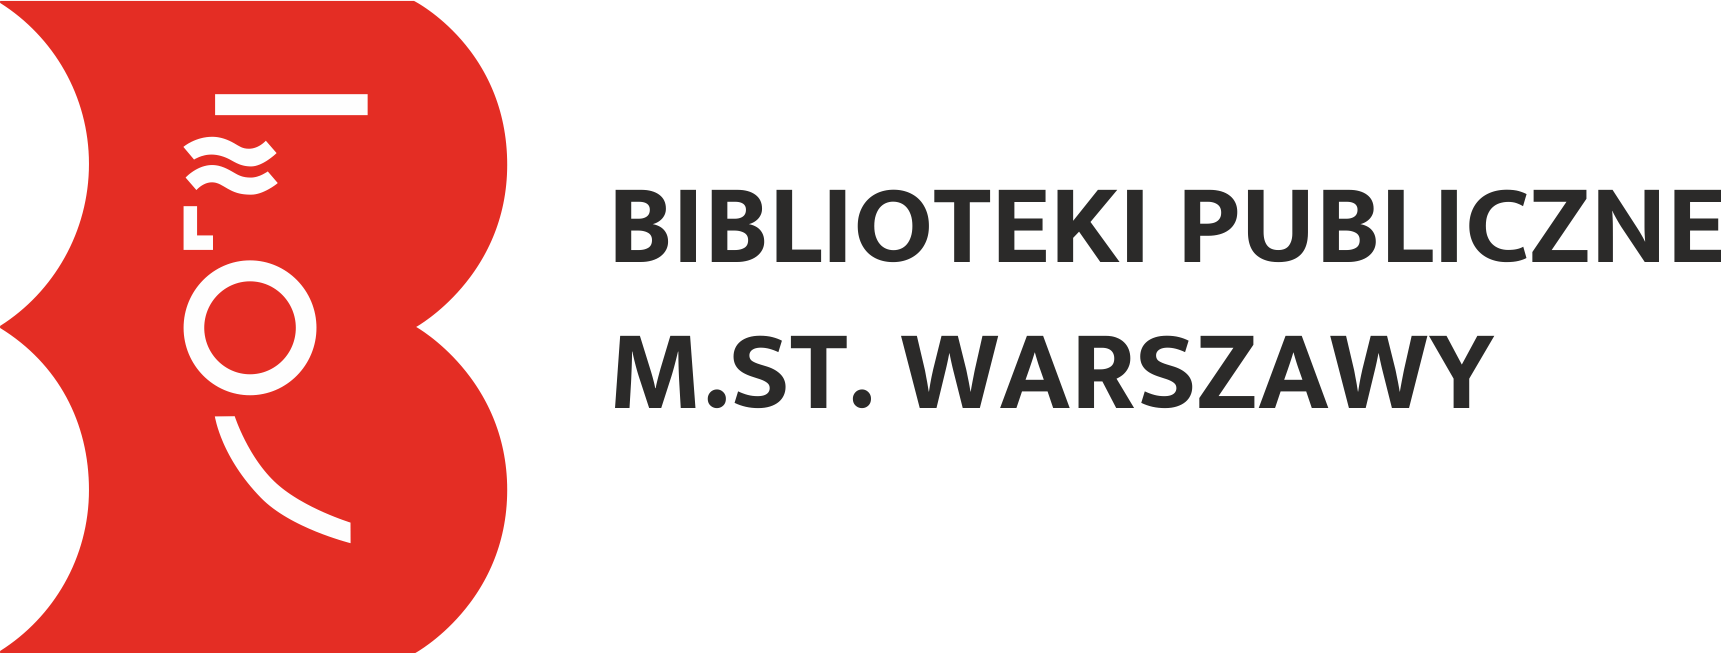 Biblioteki Publiczne Miasta Stołecznego Warszawy 